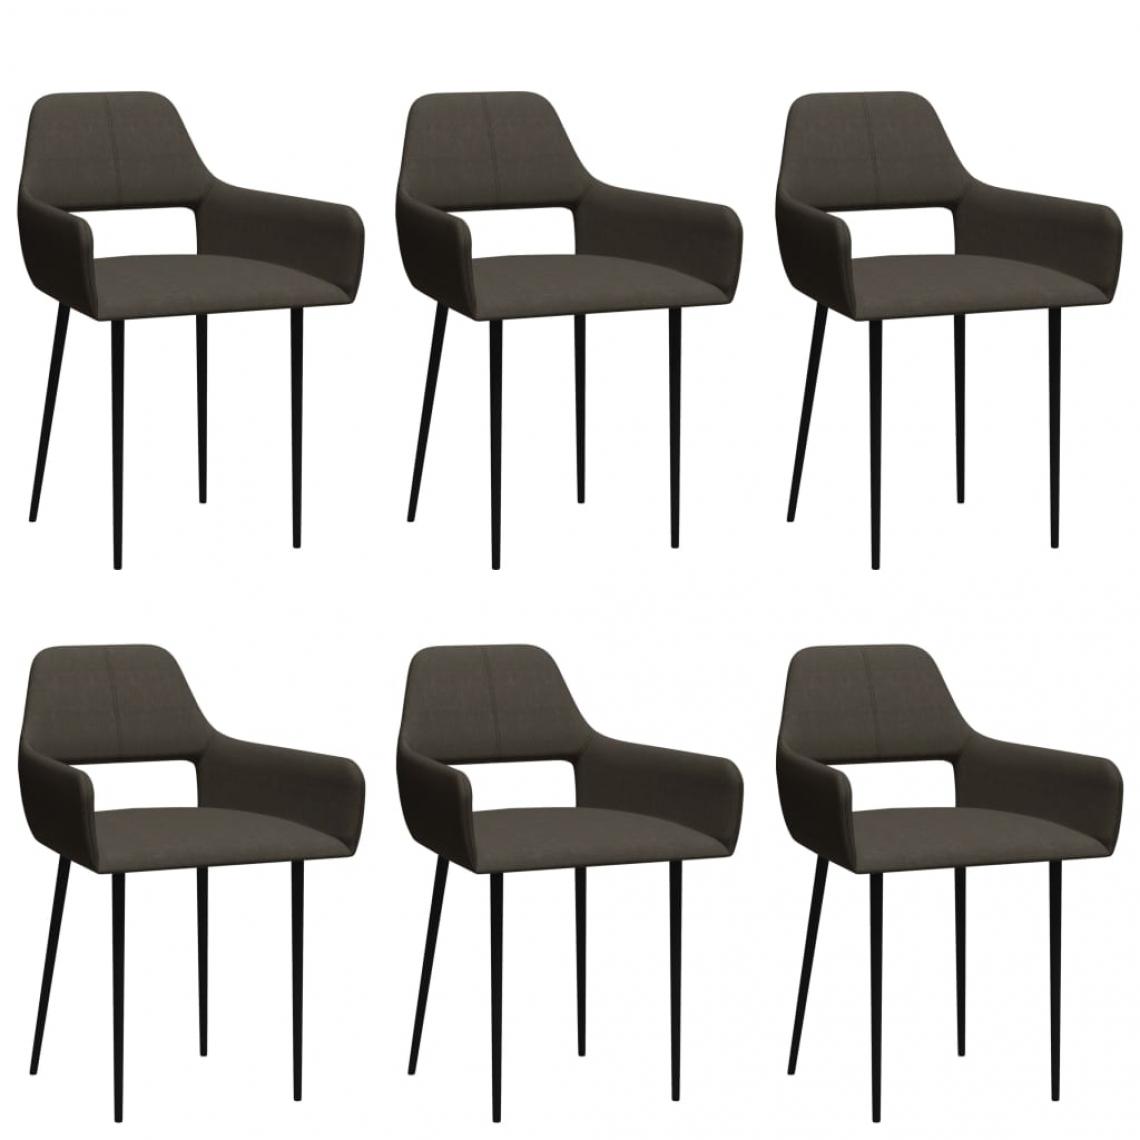 Decoshop26 - Lot de 6 chaises de salle à manger cuisine design moderne tissu taupe CDS022864 - Chaises